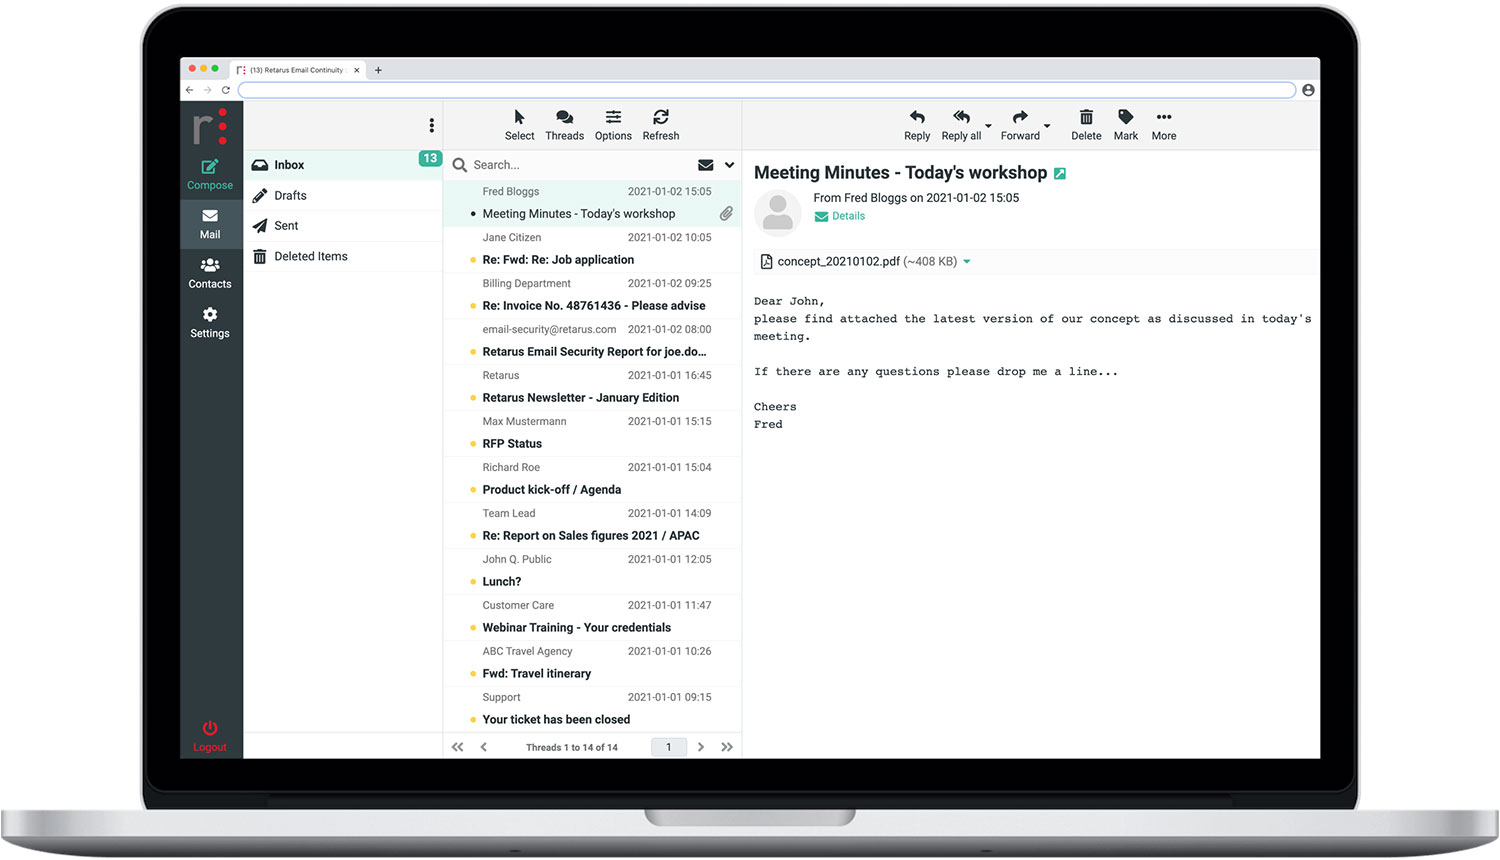 Inbox - Retarus Email Continuity Desktop UI